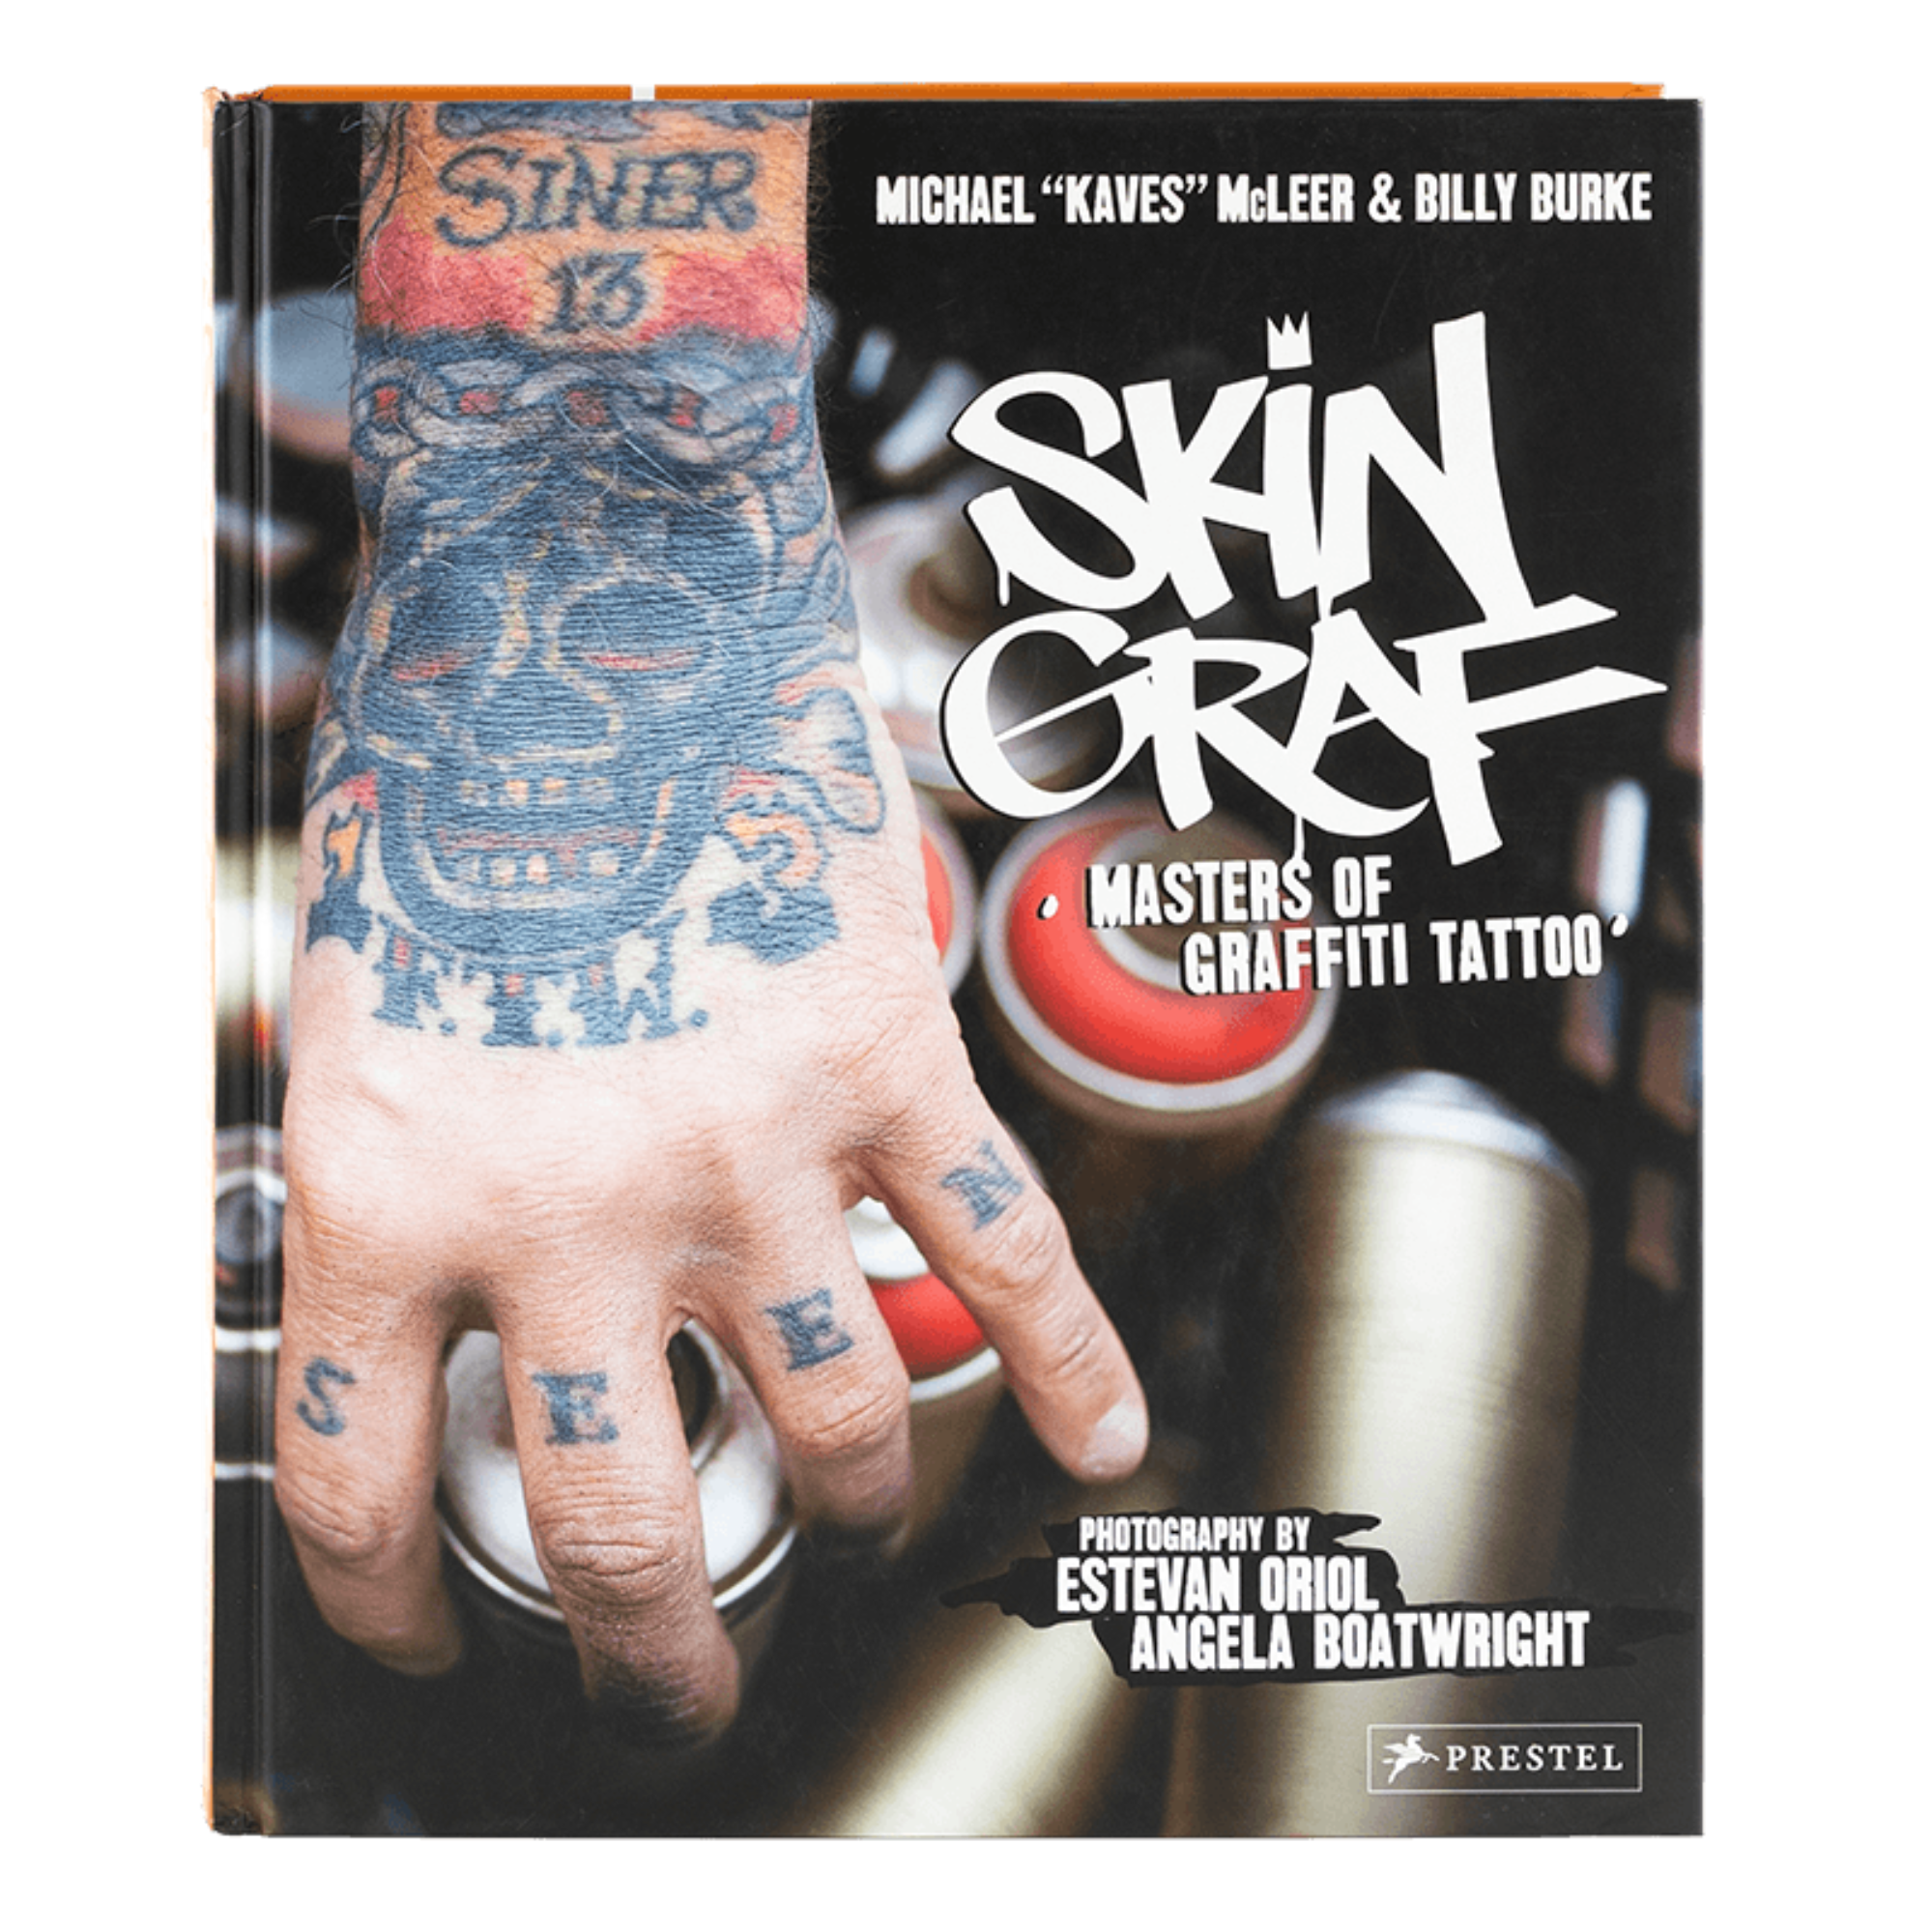 Skin Graf: Masters of Graffiti Tattoo (Vintage)